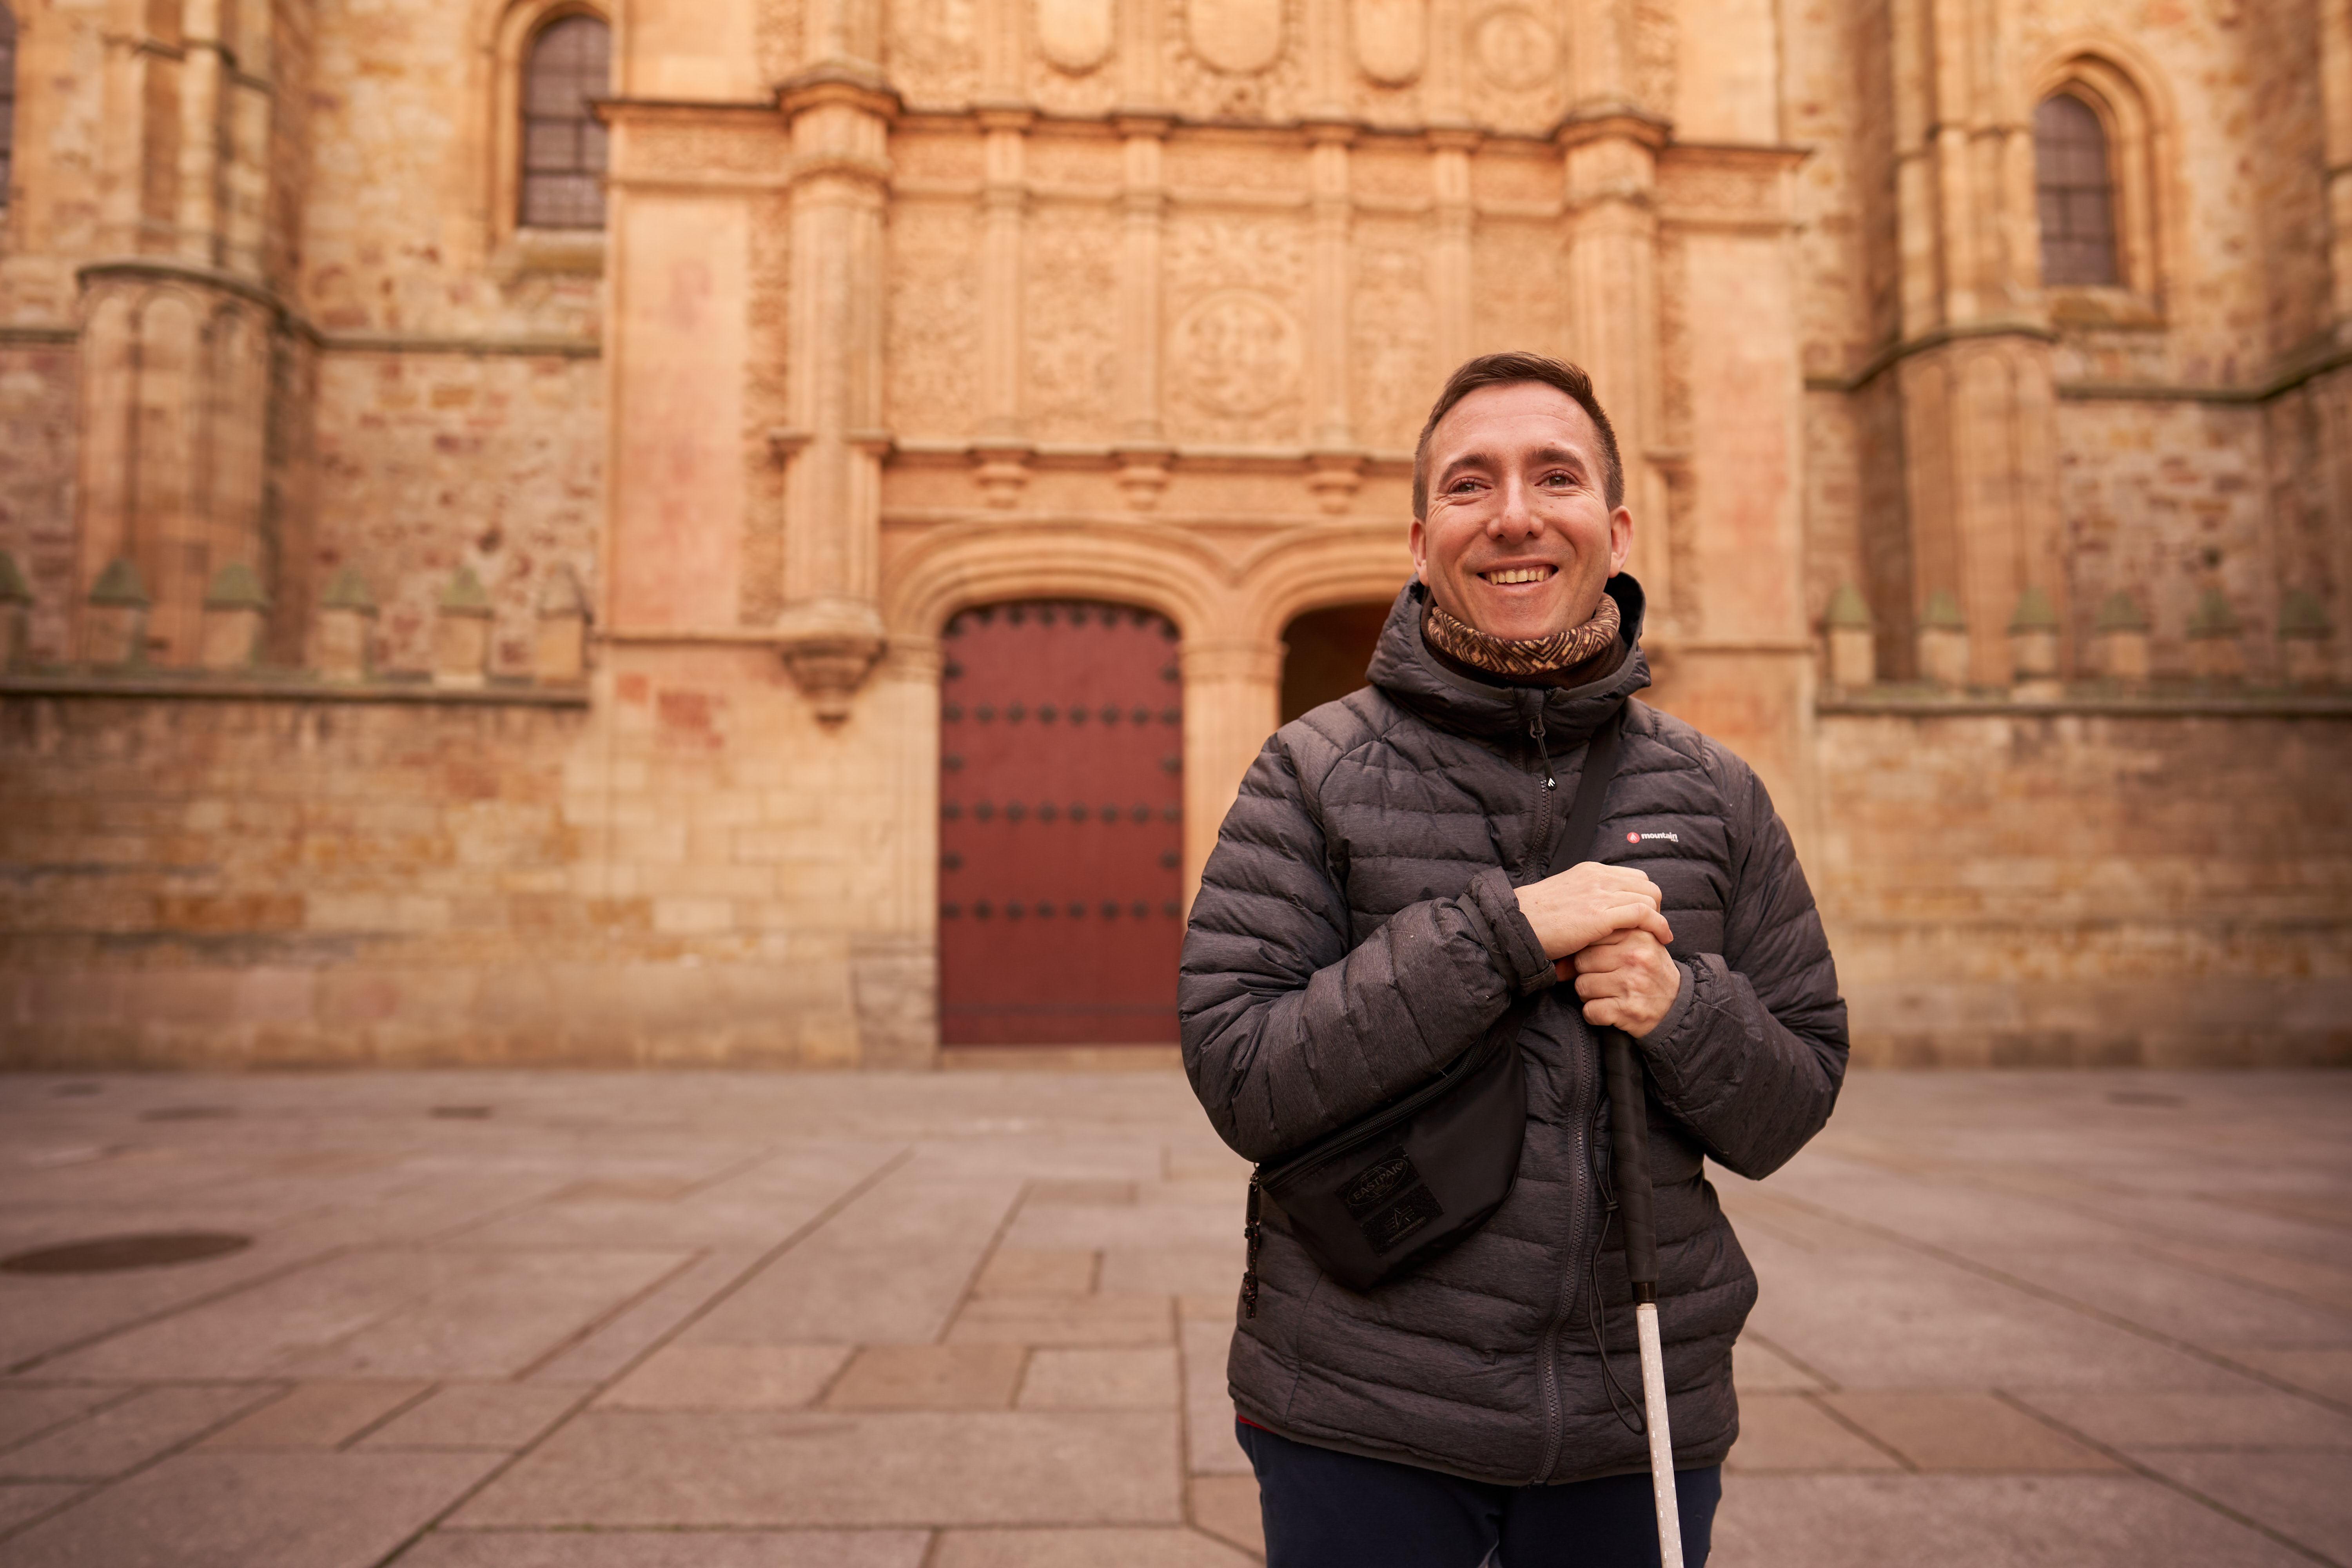 La Universidad de Salamanca acoge la defensa de tesis de un doctorando brasileño con discapacidad visual total